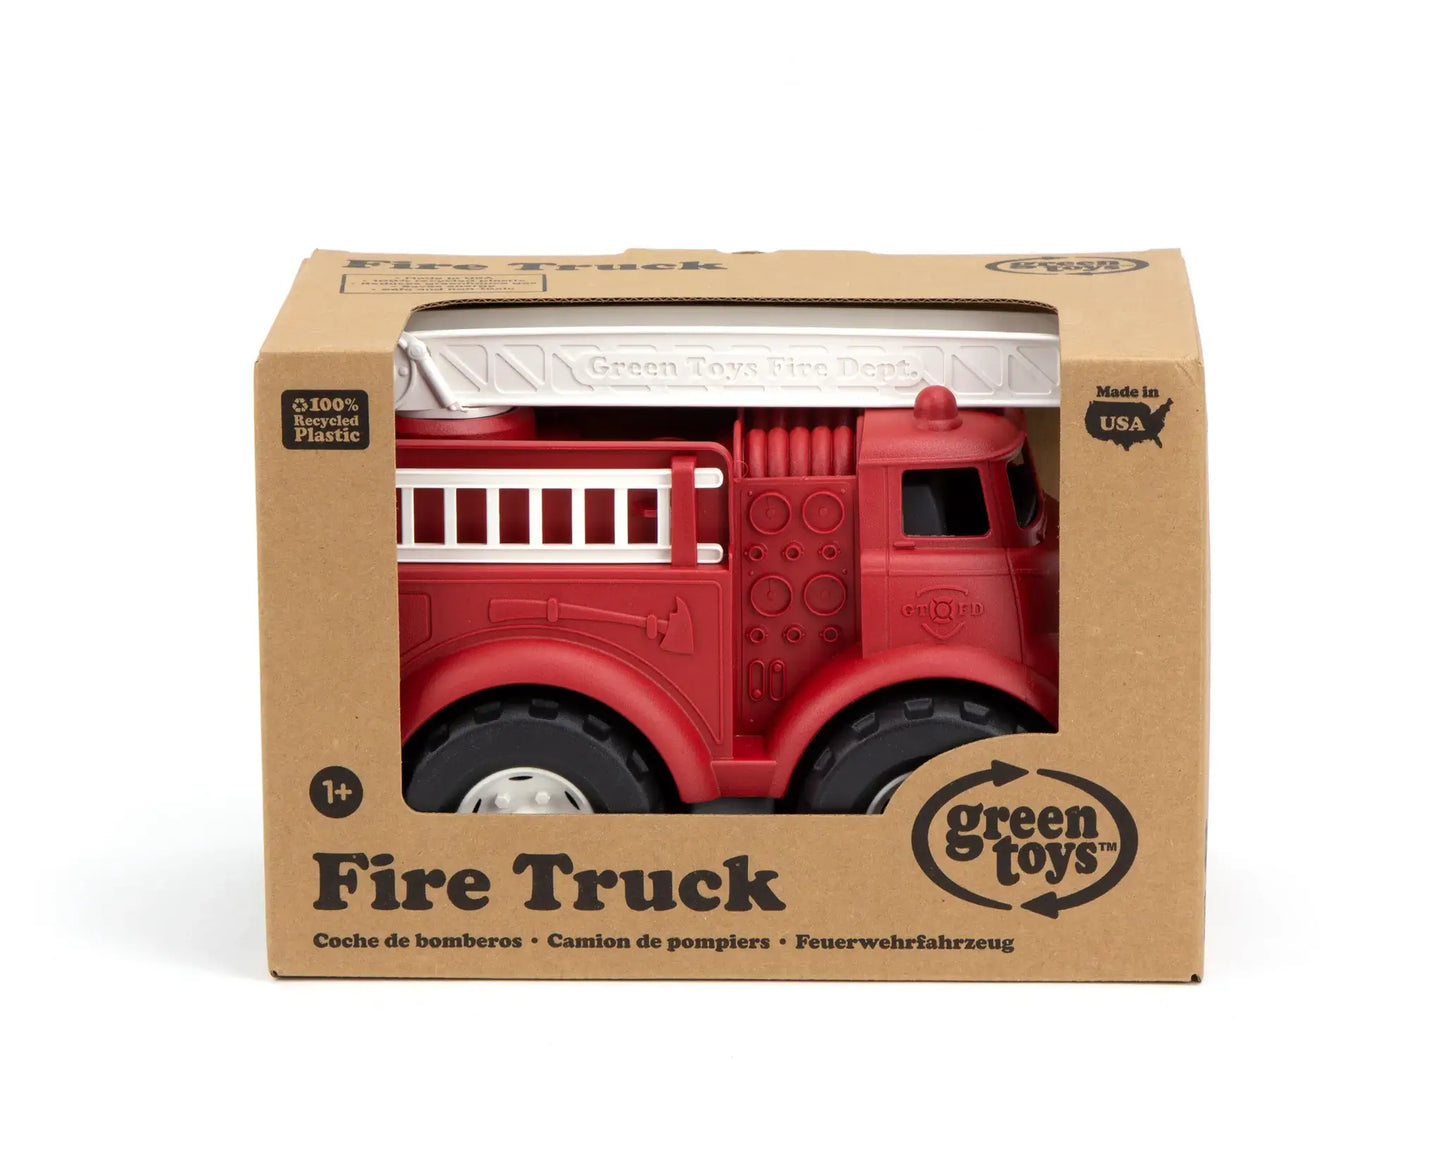 Fire Truck Green Toys